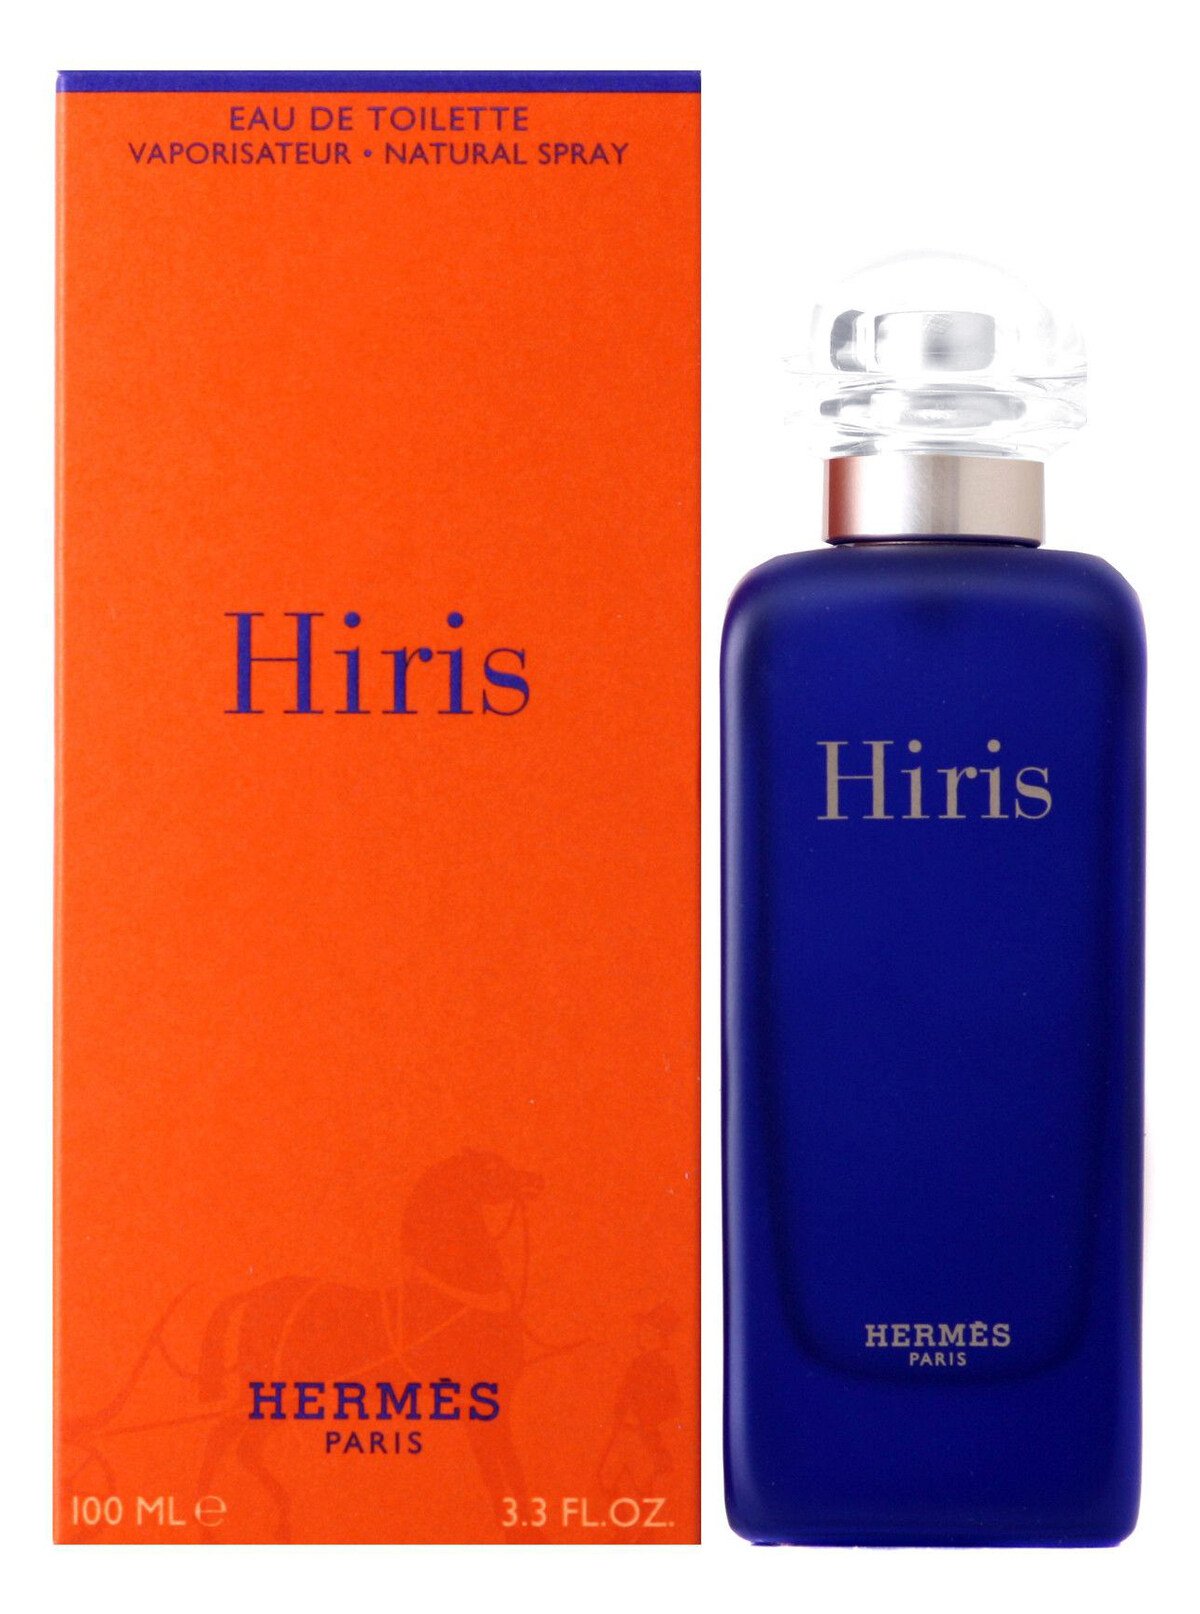 Hermès - Hiris | Reviews and Rating